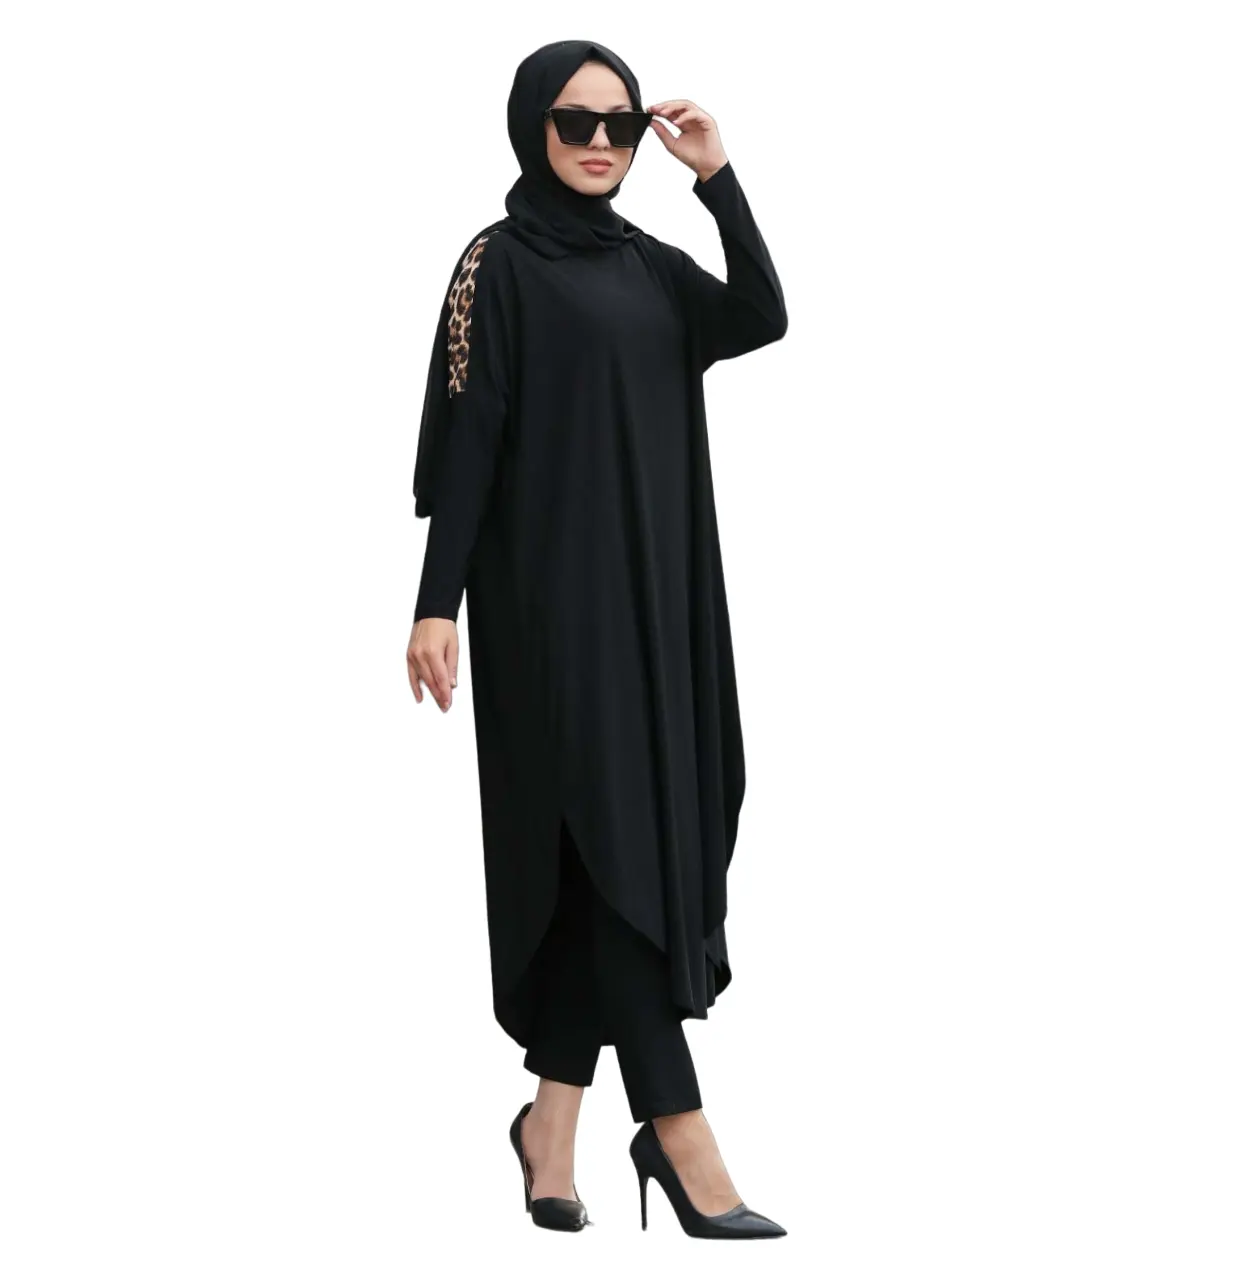 Nuevo diseñador Abaya superventas al por mayor impreso Abaya para niñas y mujeres Islamique Casual Abayas moda musulmana vestido Hijab